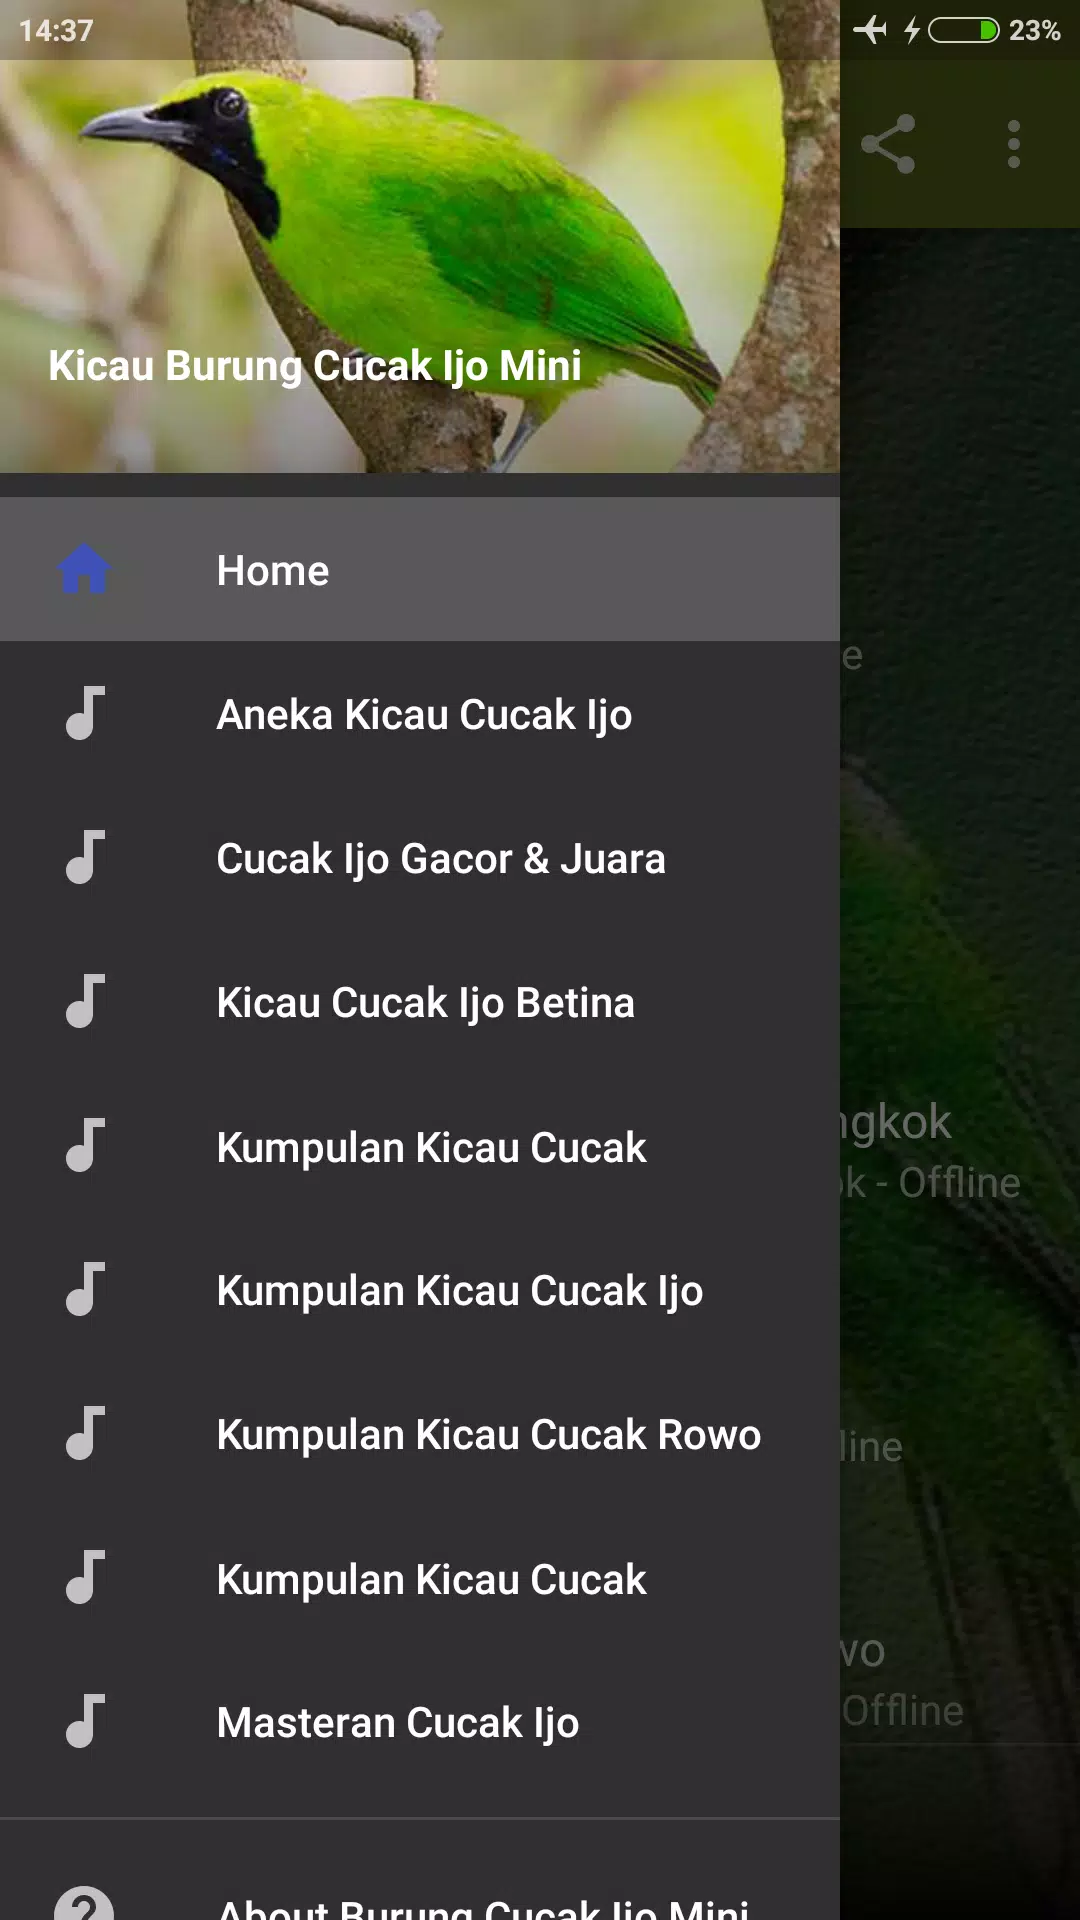 Suara Burung Cucak Ijo Mini Mp3 for Android - APK Download